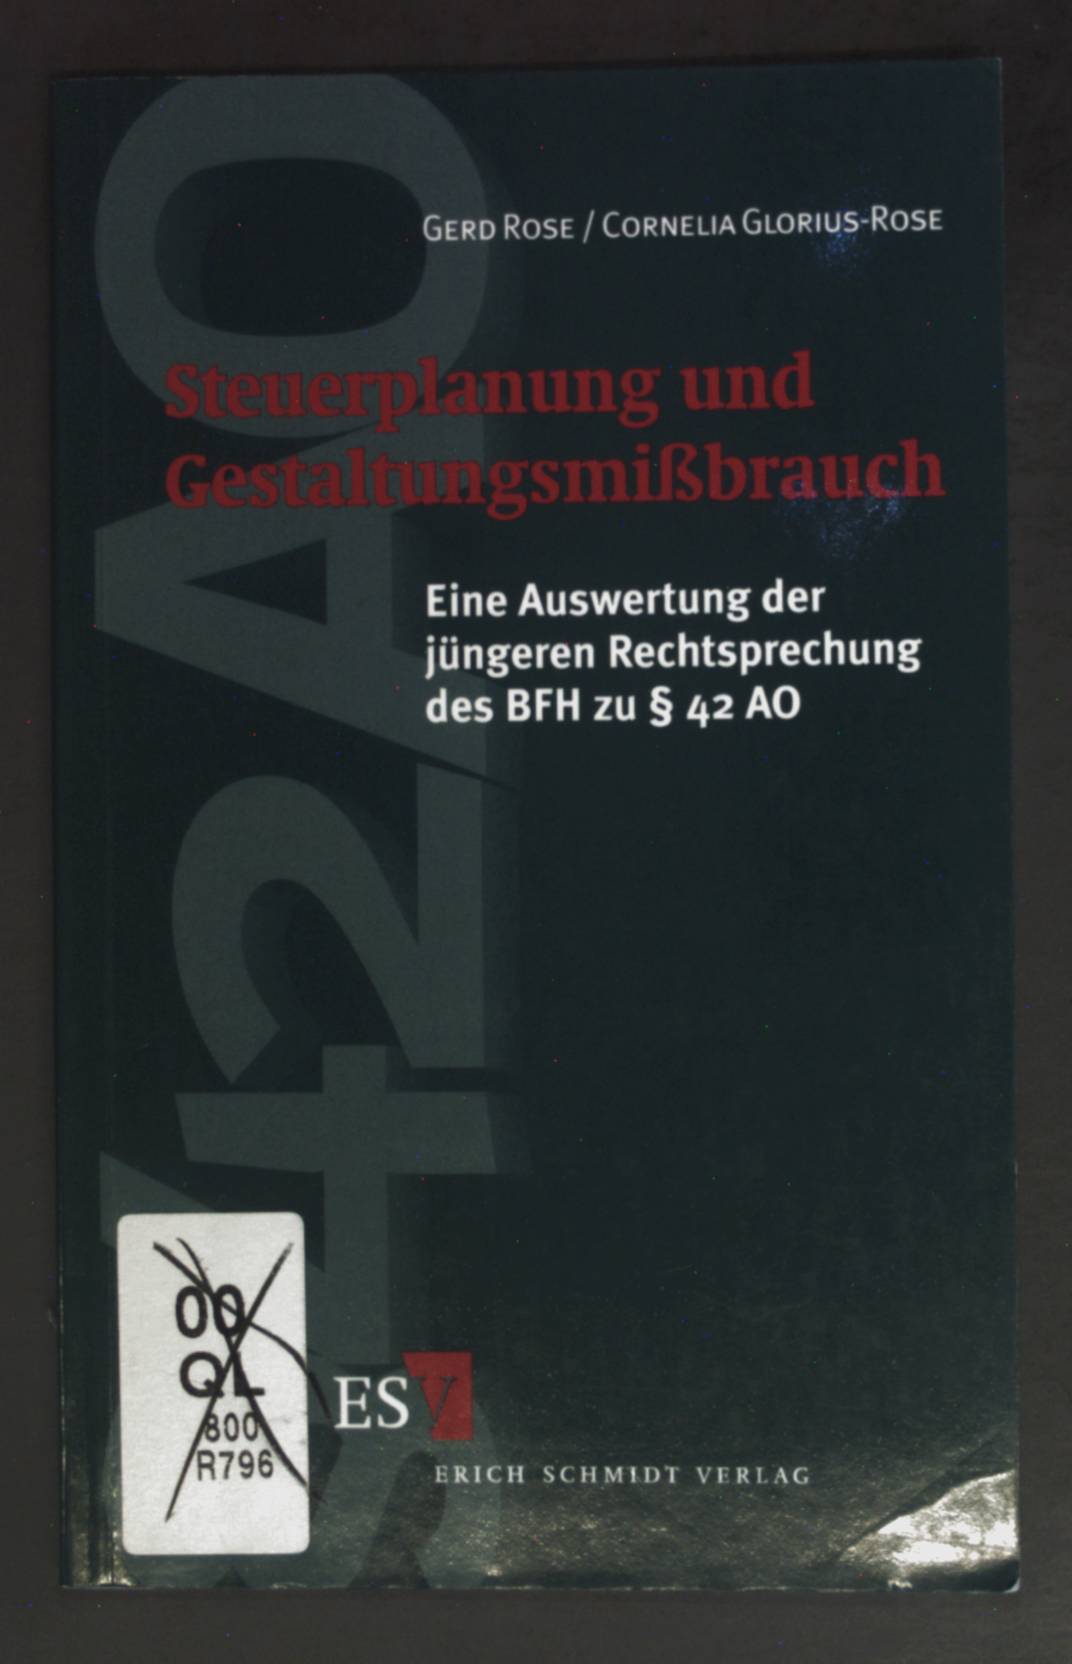 Steuerplanung und Gestaltungsmissbrauch : eine Auswertung der jüngeren Rechtsprechung des BFH zu § 42 AO. - Rose, Gerd und Cornelia Glorius-Rose